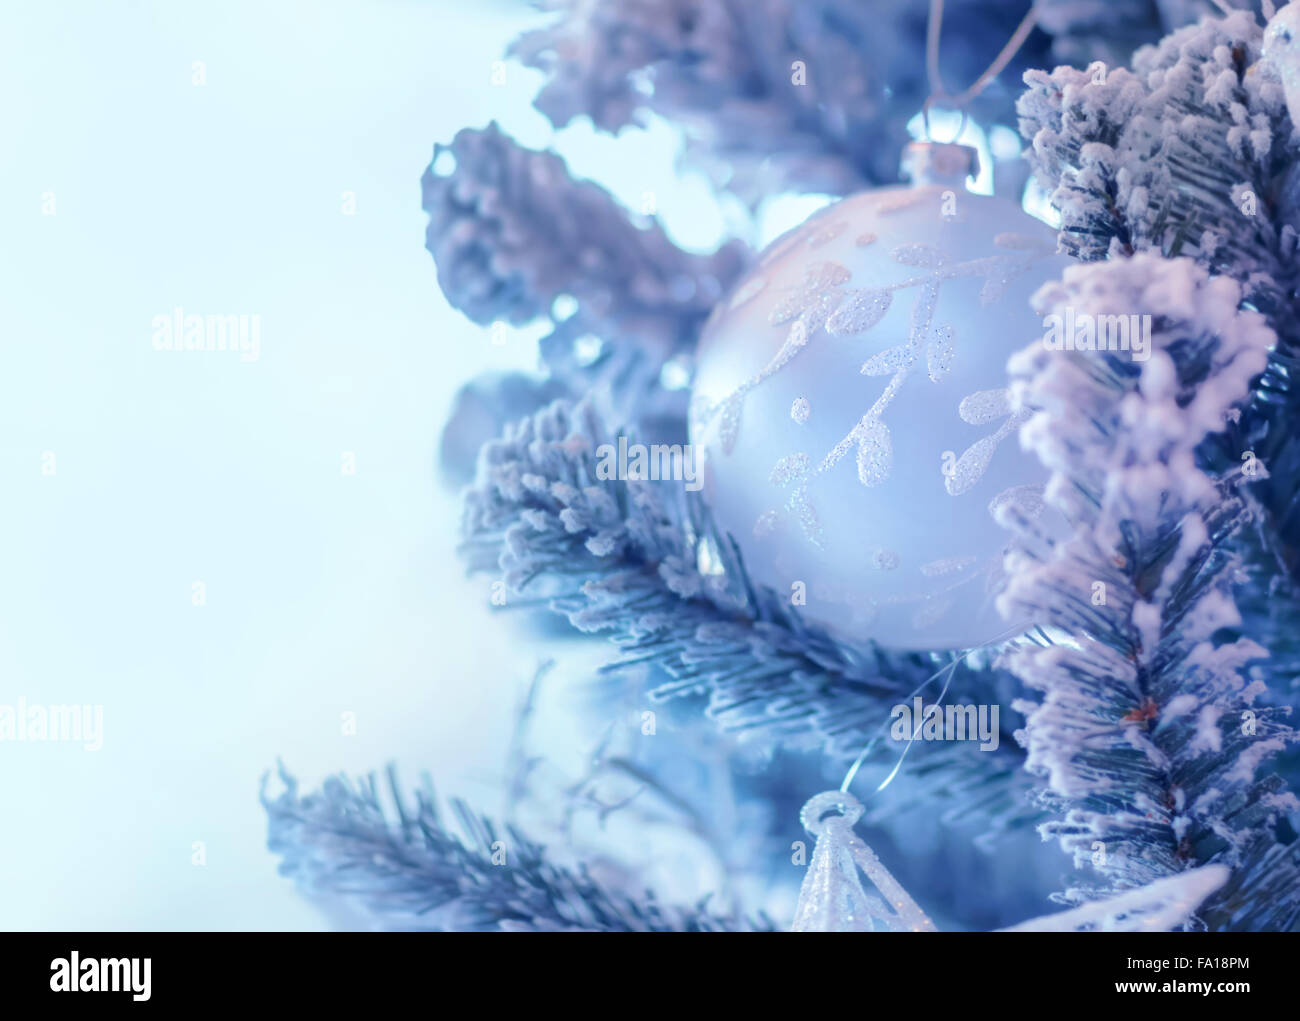 Schönen Weihnachtsbaum Grenze, sanfte weiße Kugel Kiefer Zweig hängen auf blauem Hintergrund mit Schnee bedeckt. Stockfoto